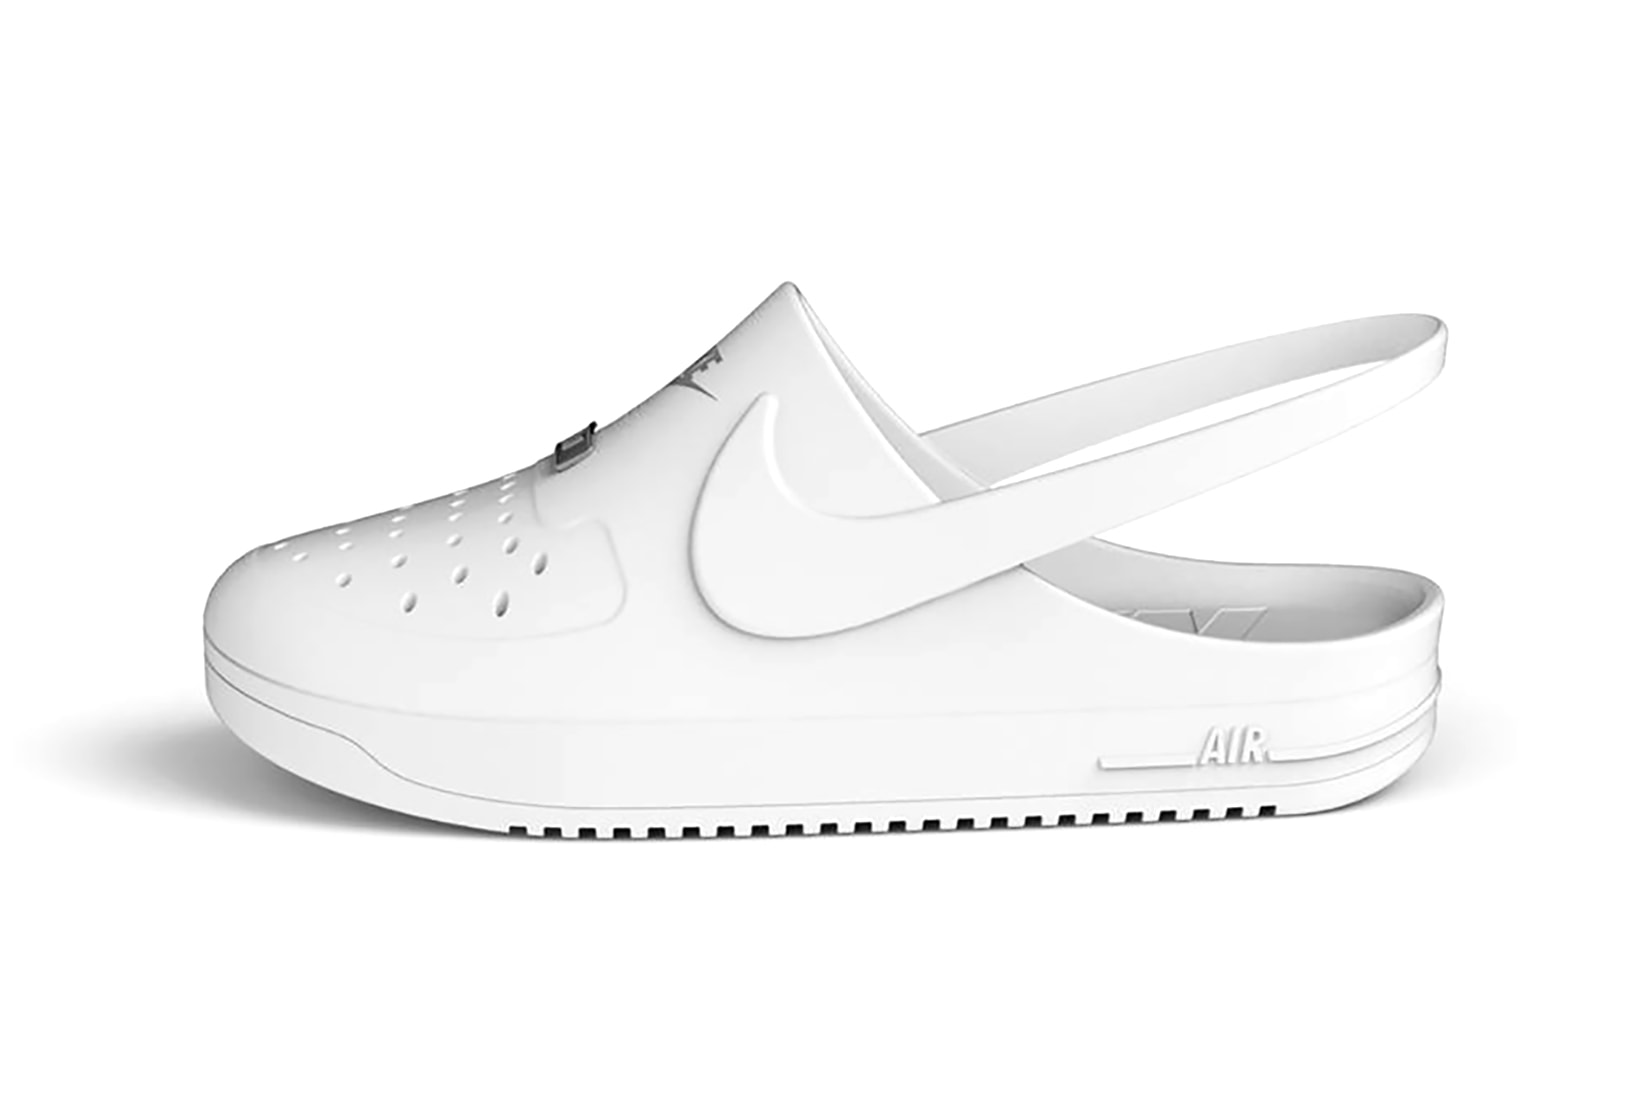 Nike Air Force 1 Low “Phantom Croc” Coming Soon